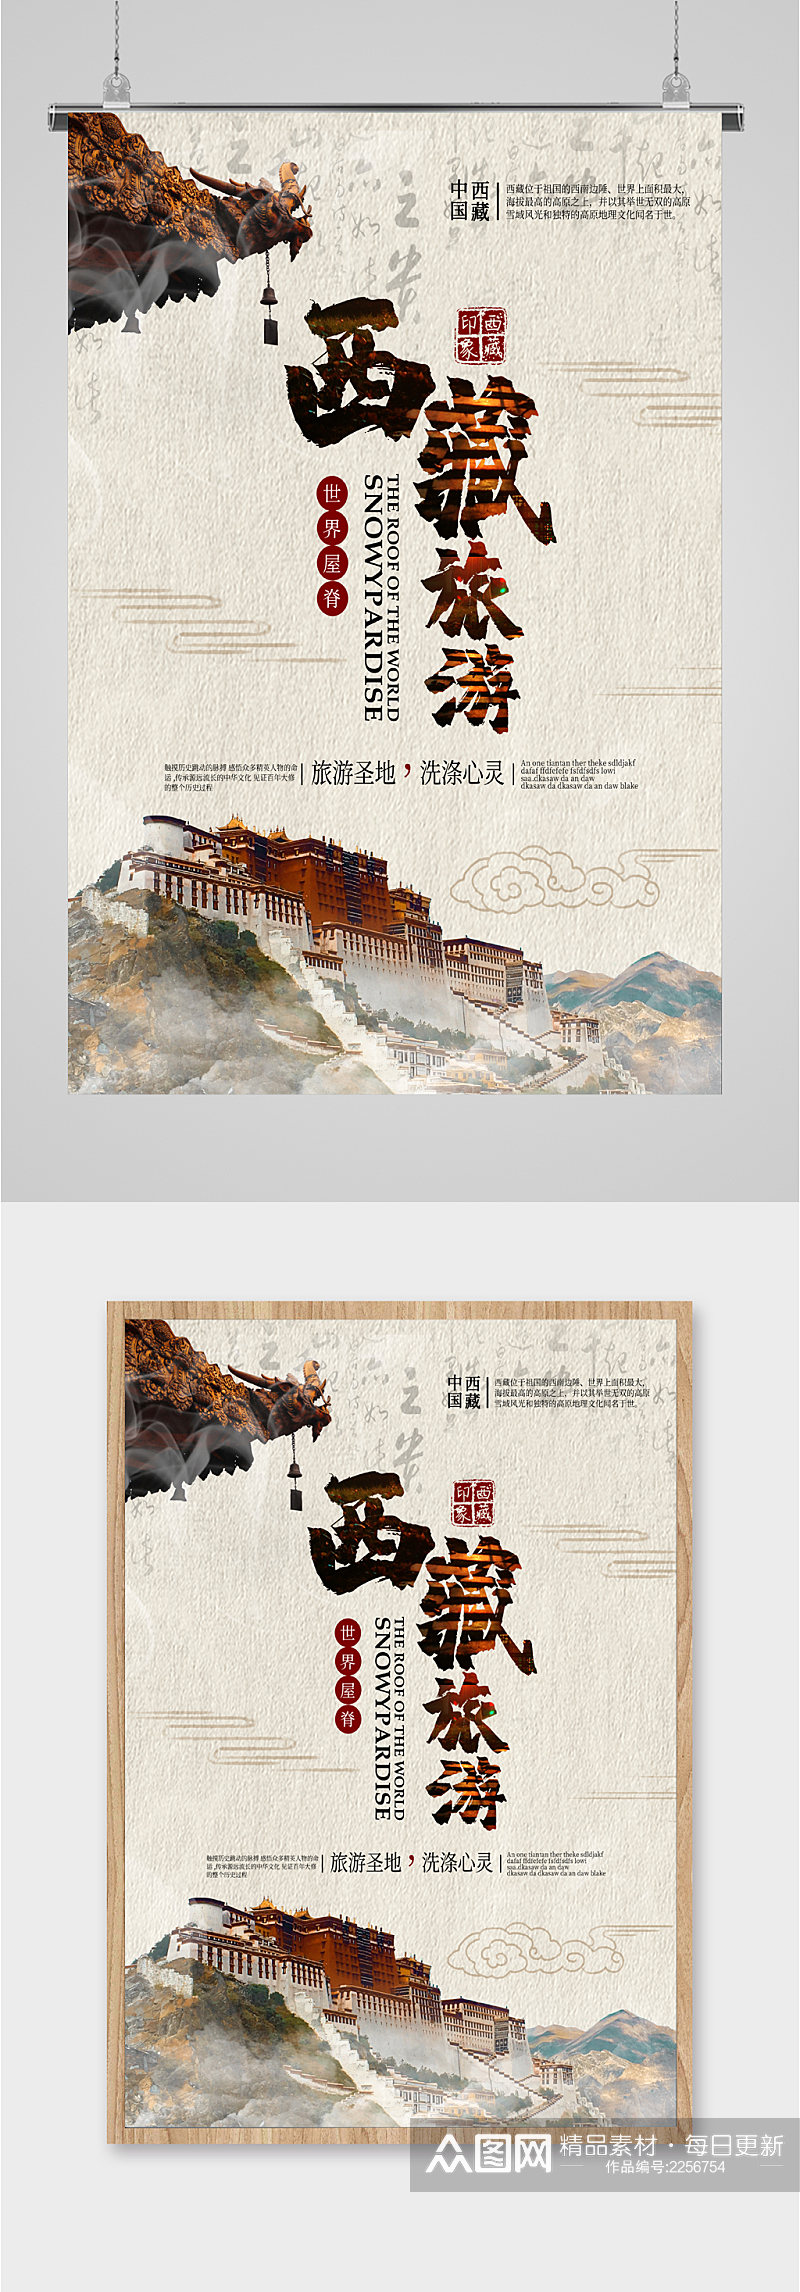 西藏旅游世界屋脊海报素材